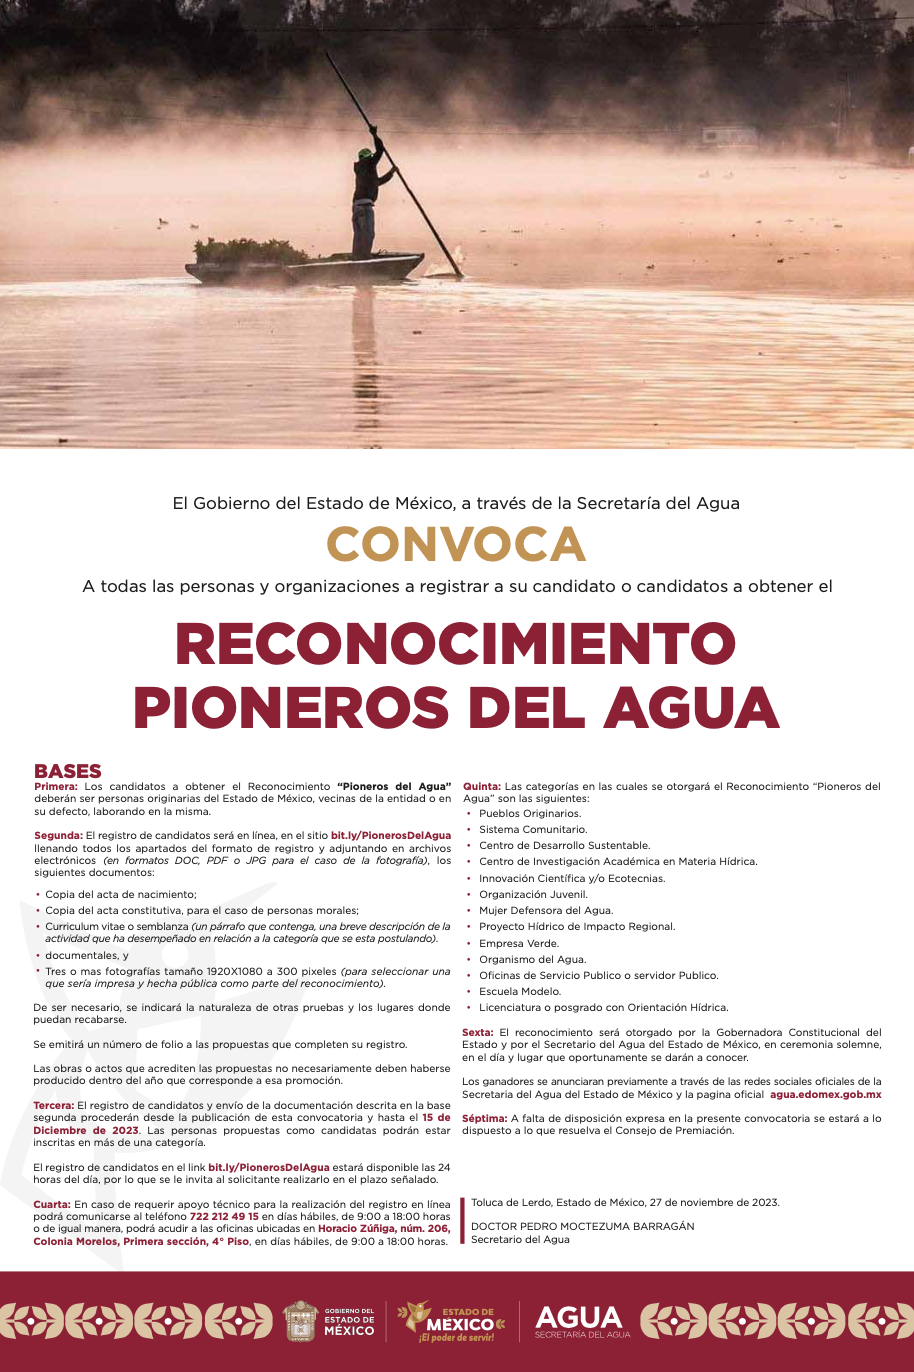 Reconocimiento Pioneros del Agua (Gobierno del Edomex, Comisión del Agua Edomex)